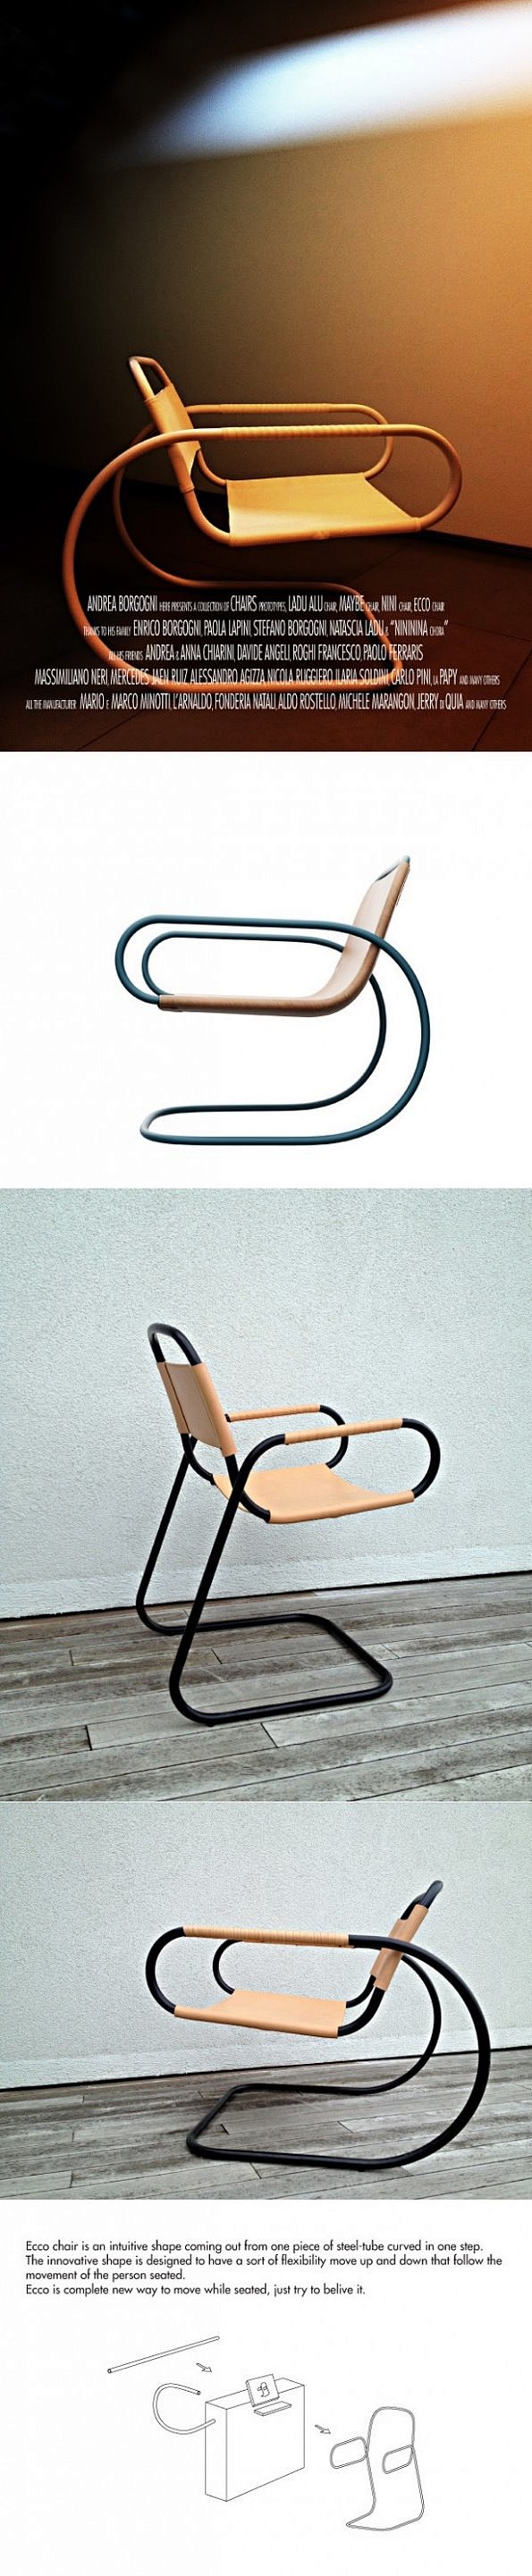 意大利设计师安德烈设计的ECCO椅子